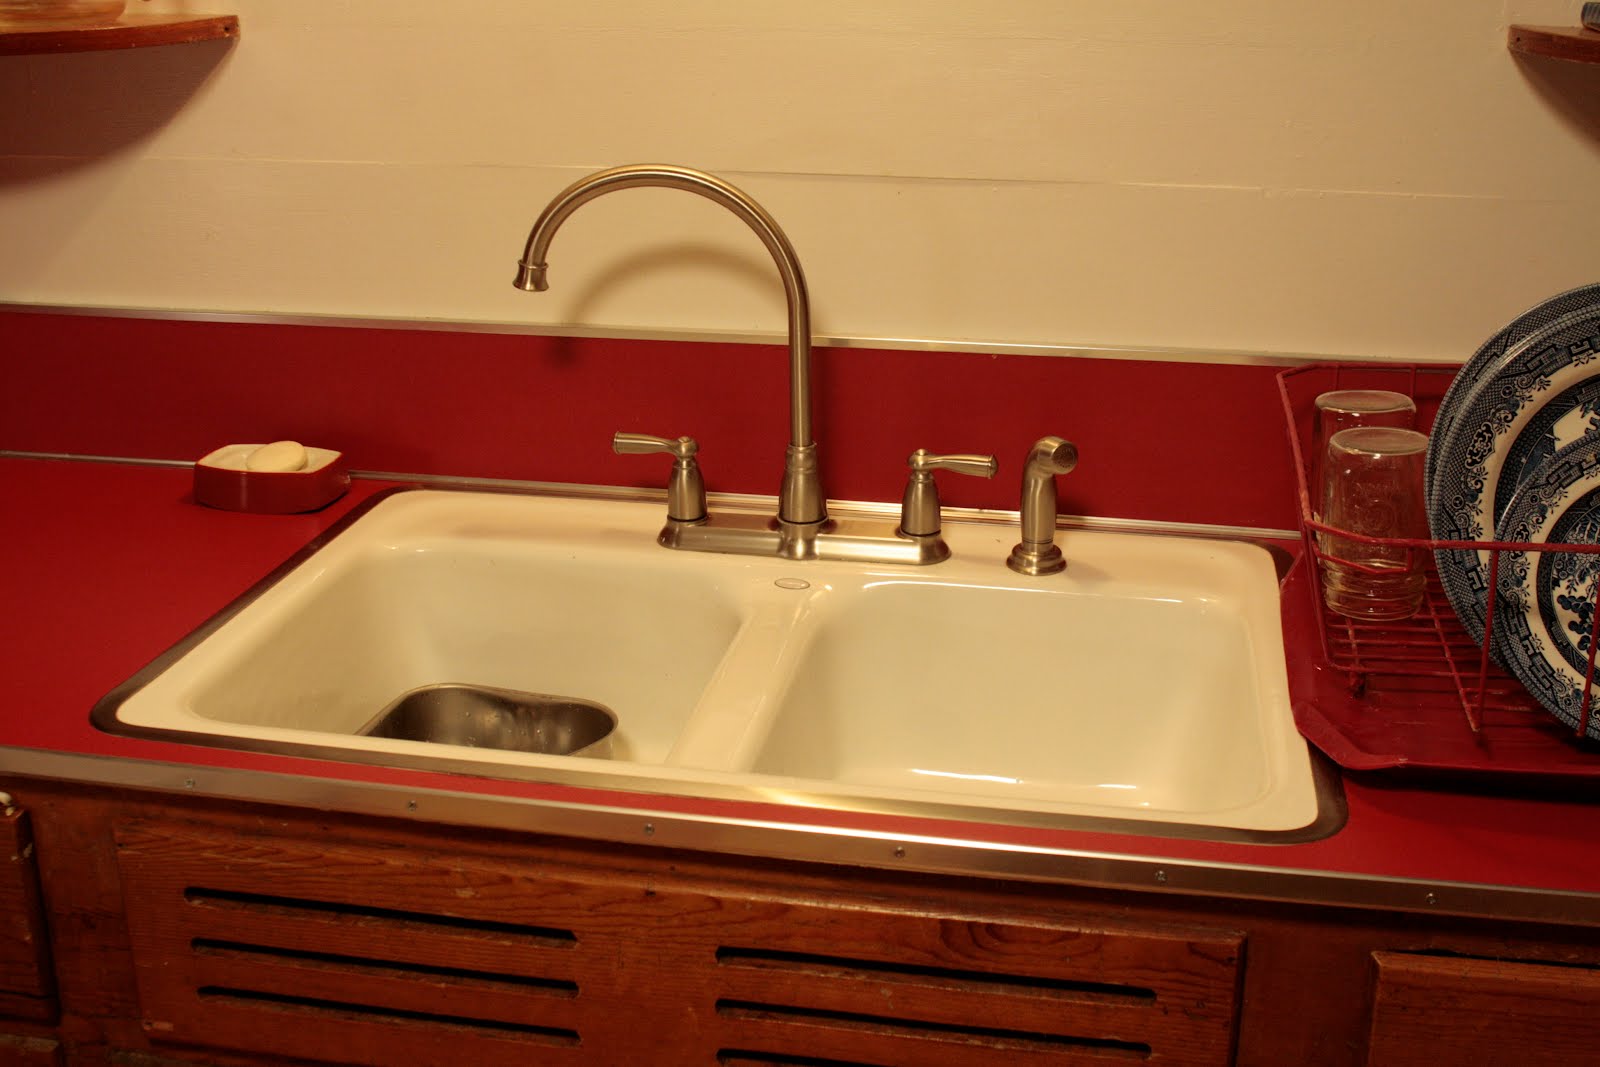 cast iron kitchen sink idea